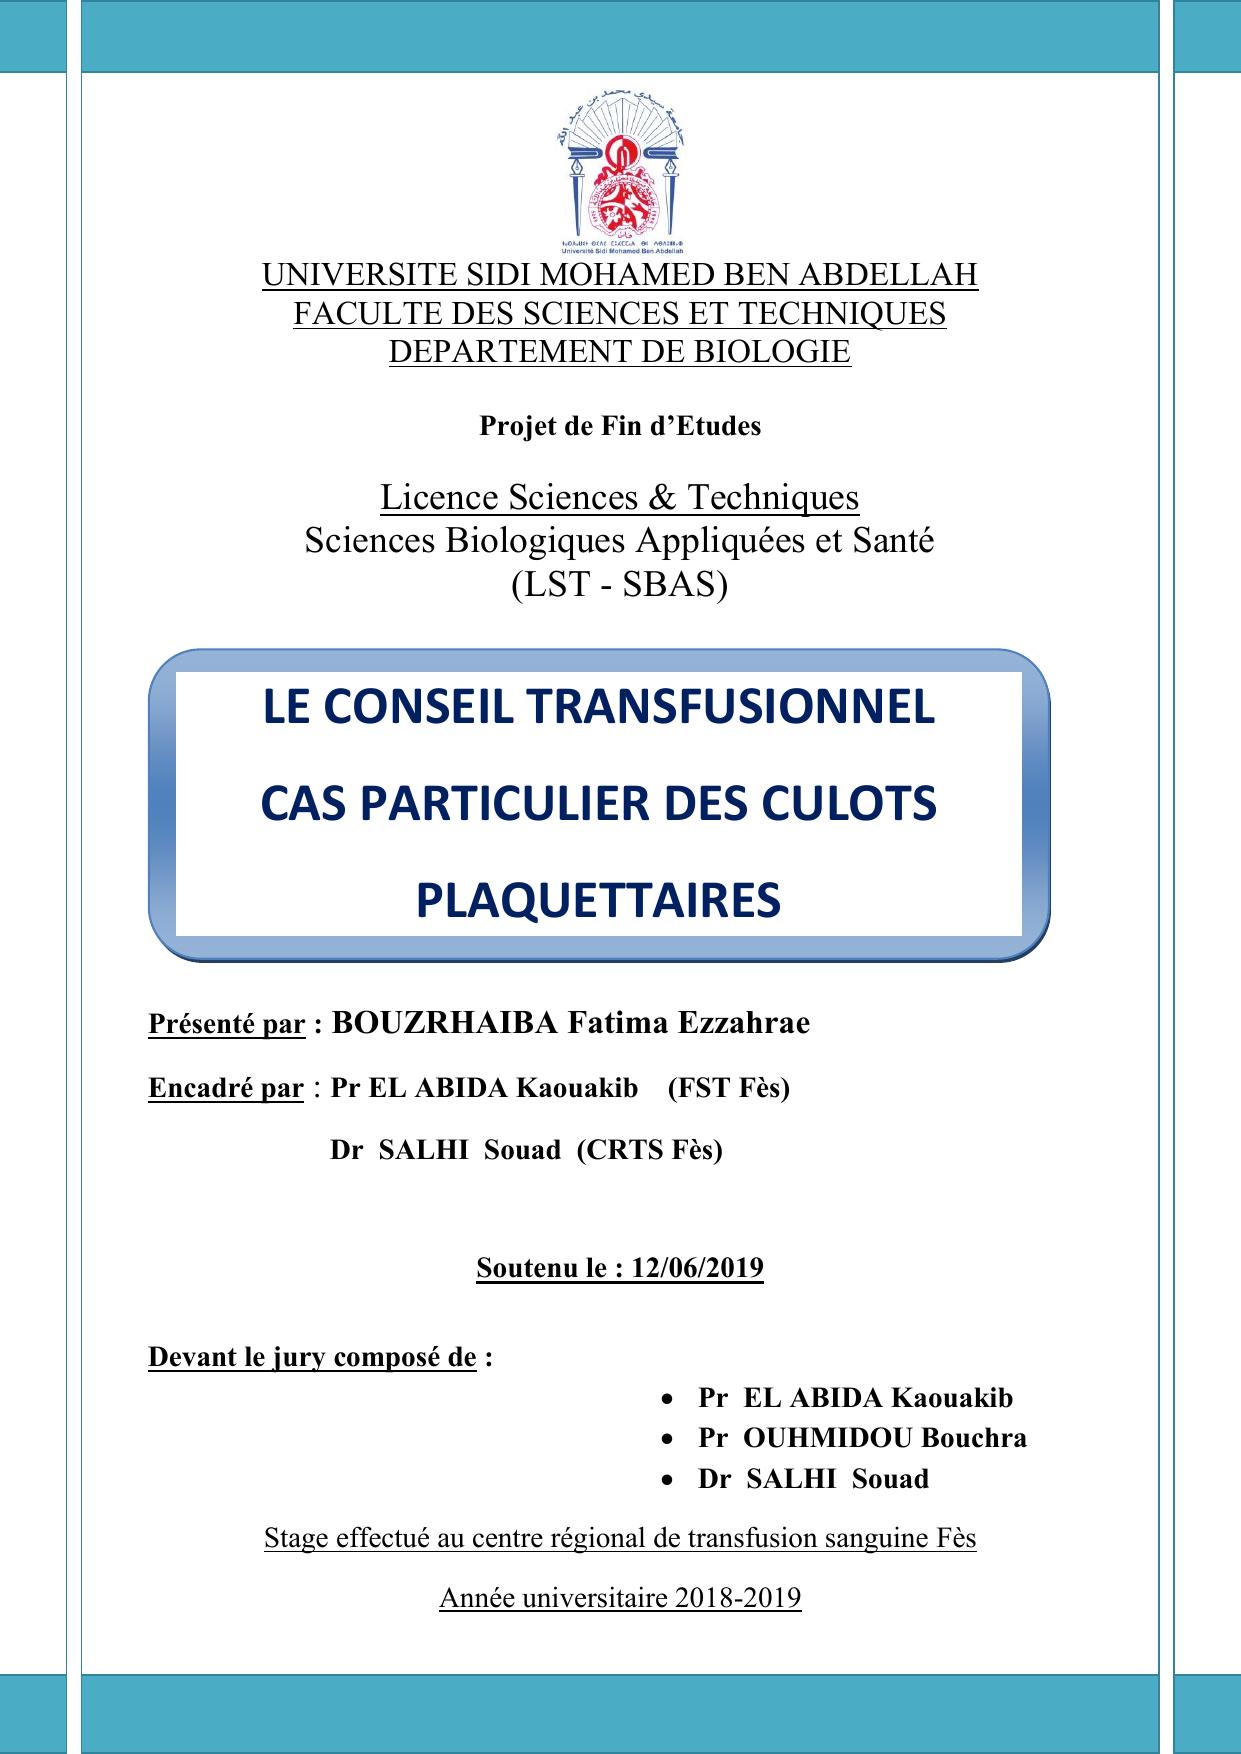 LE CONSEIL TRANSFUSIONNEL CAS PARTICULIER DES CULOTS PLAQUETTAIRES